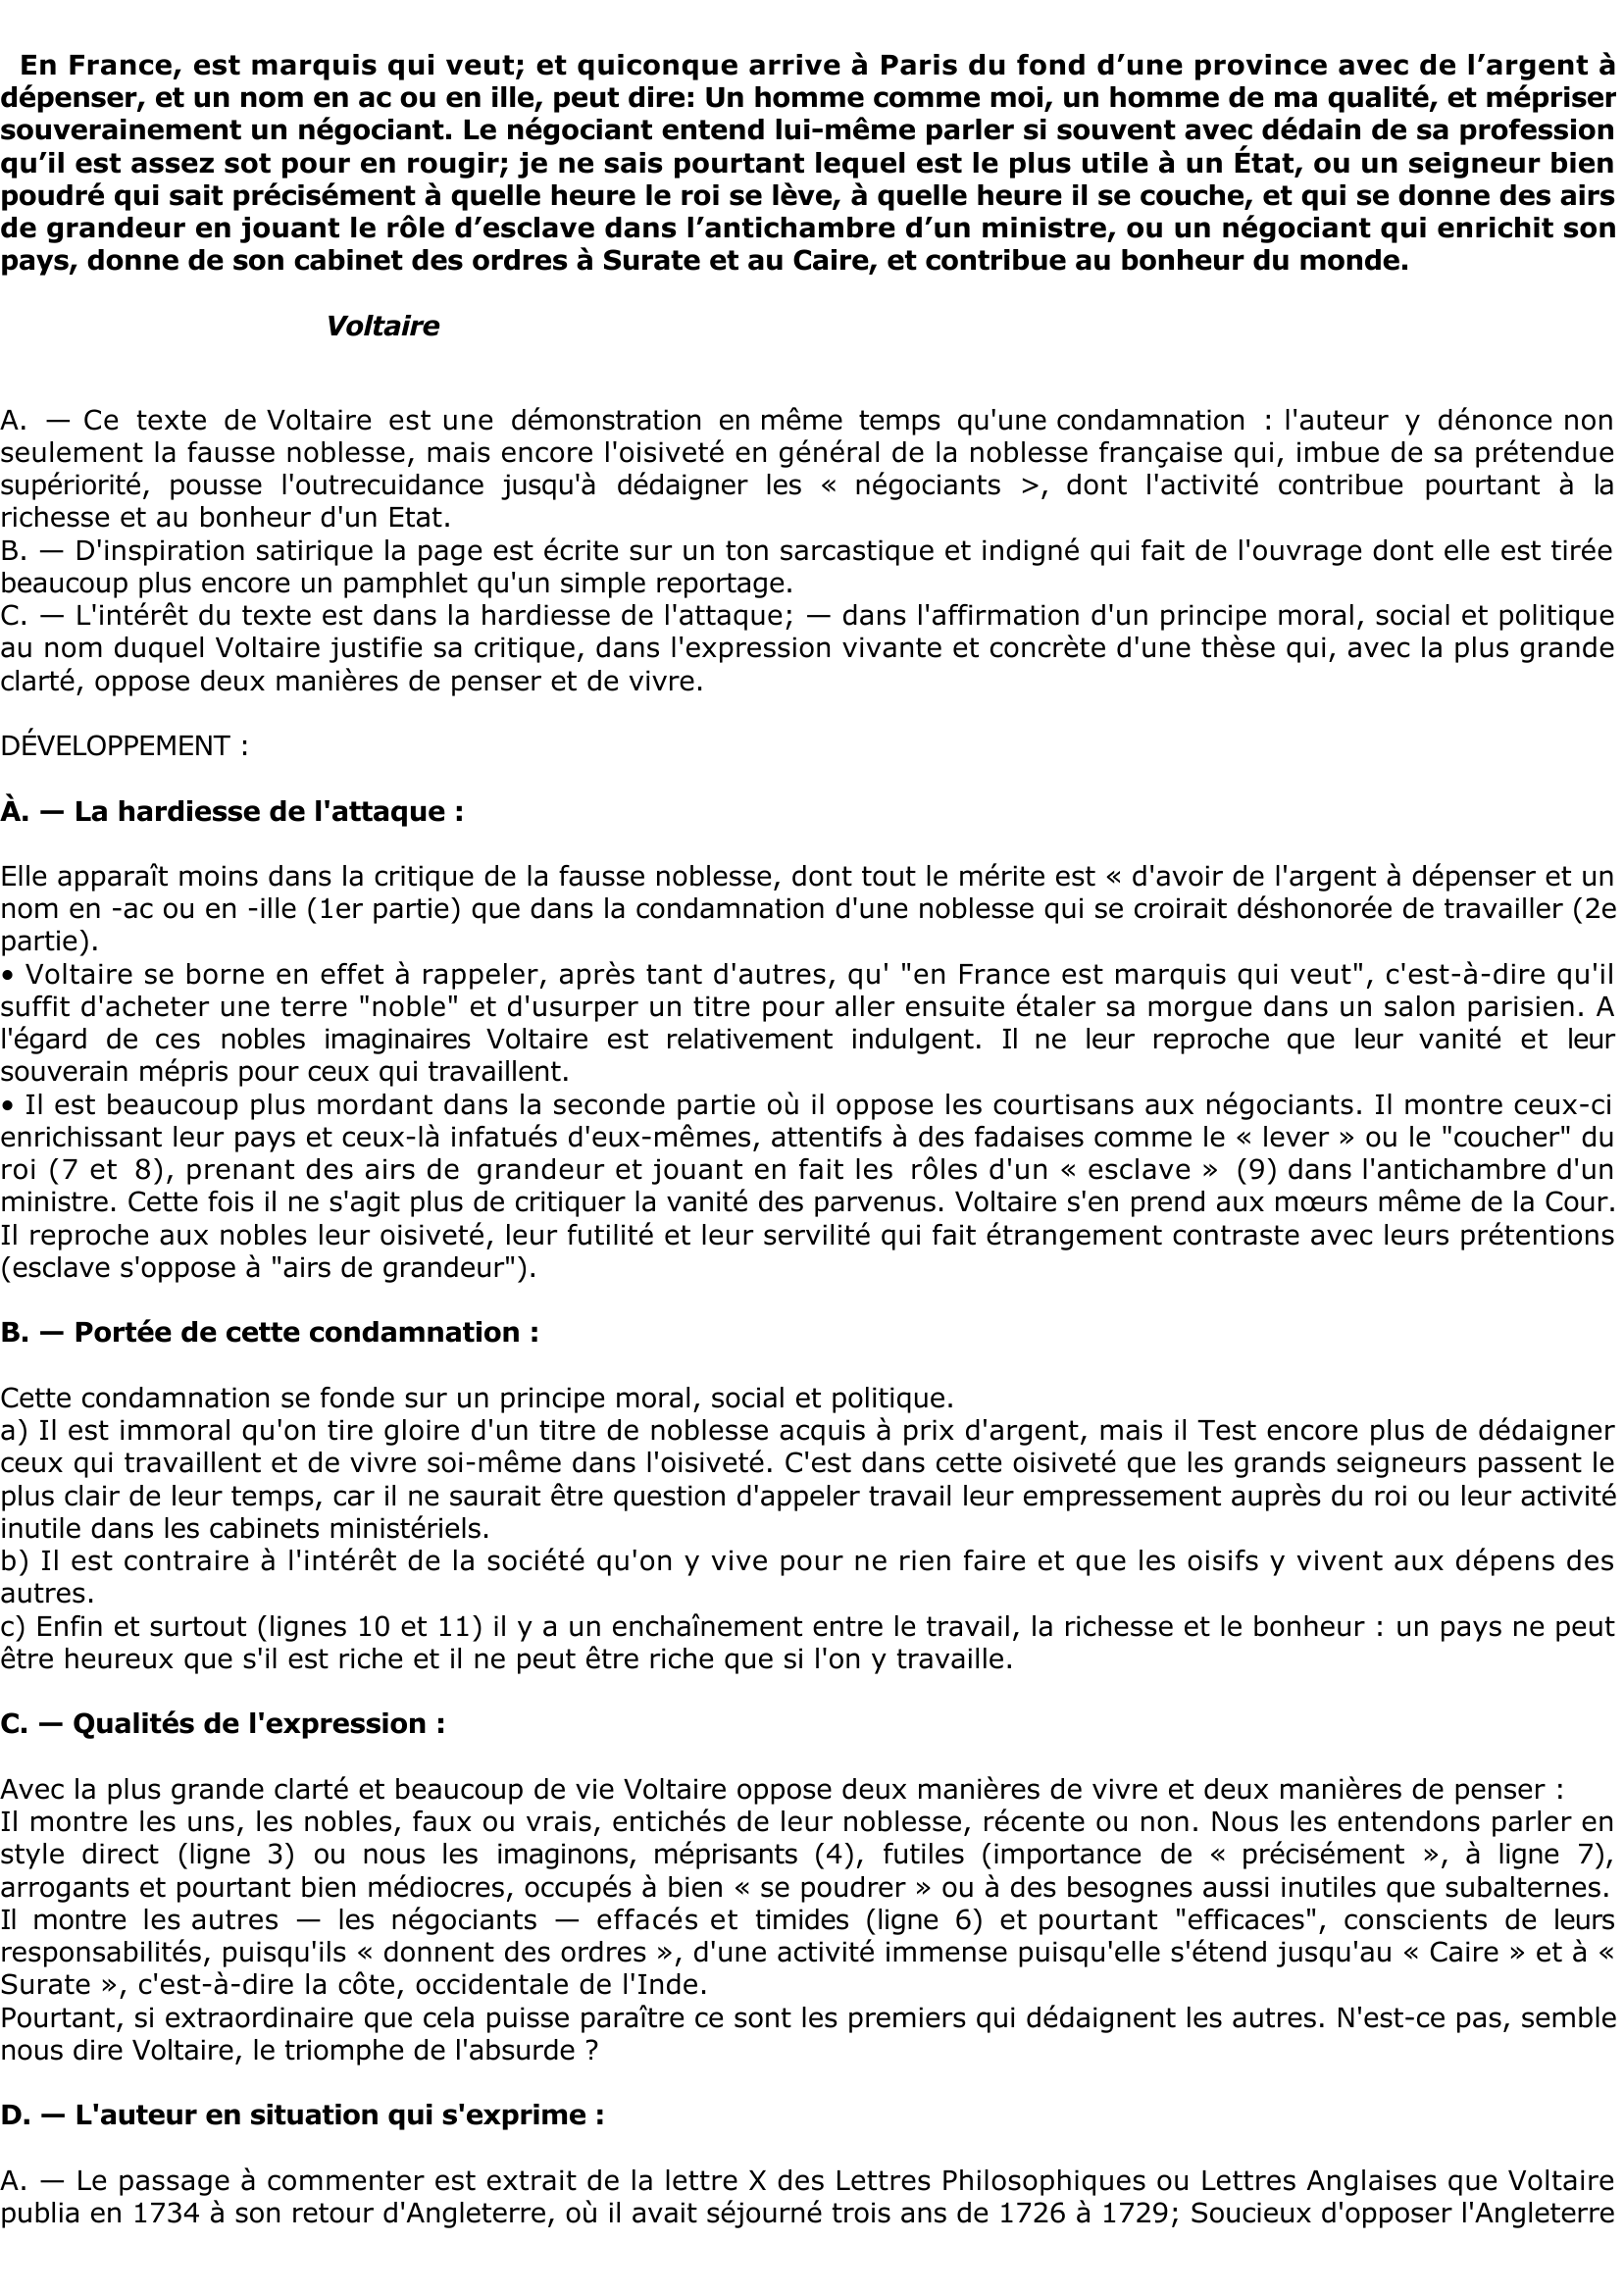 Prévisualisation du document Lettre X sur le commerce de Voltaire